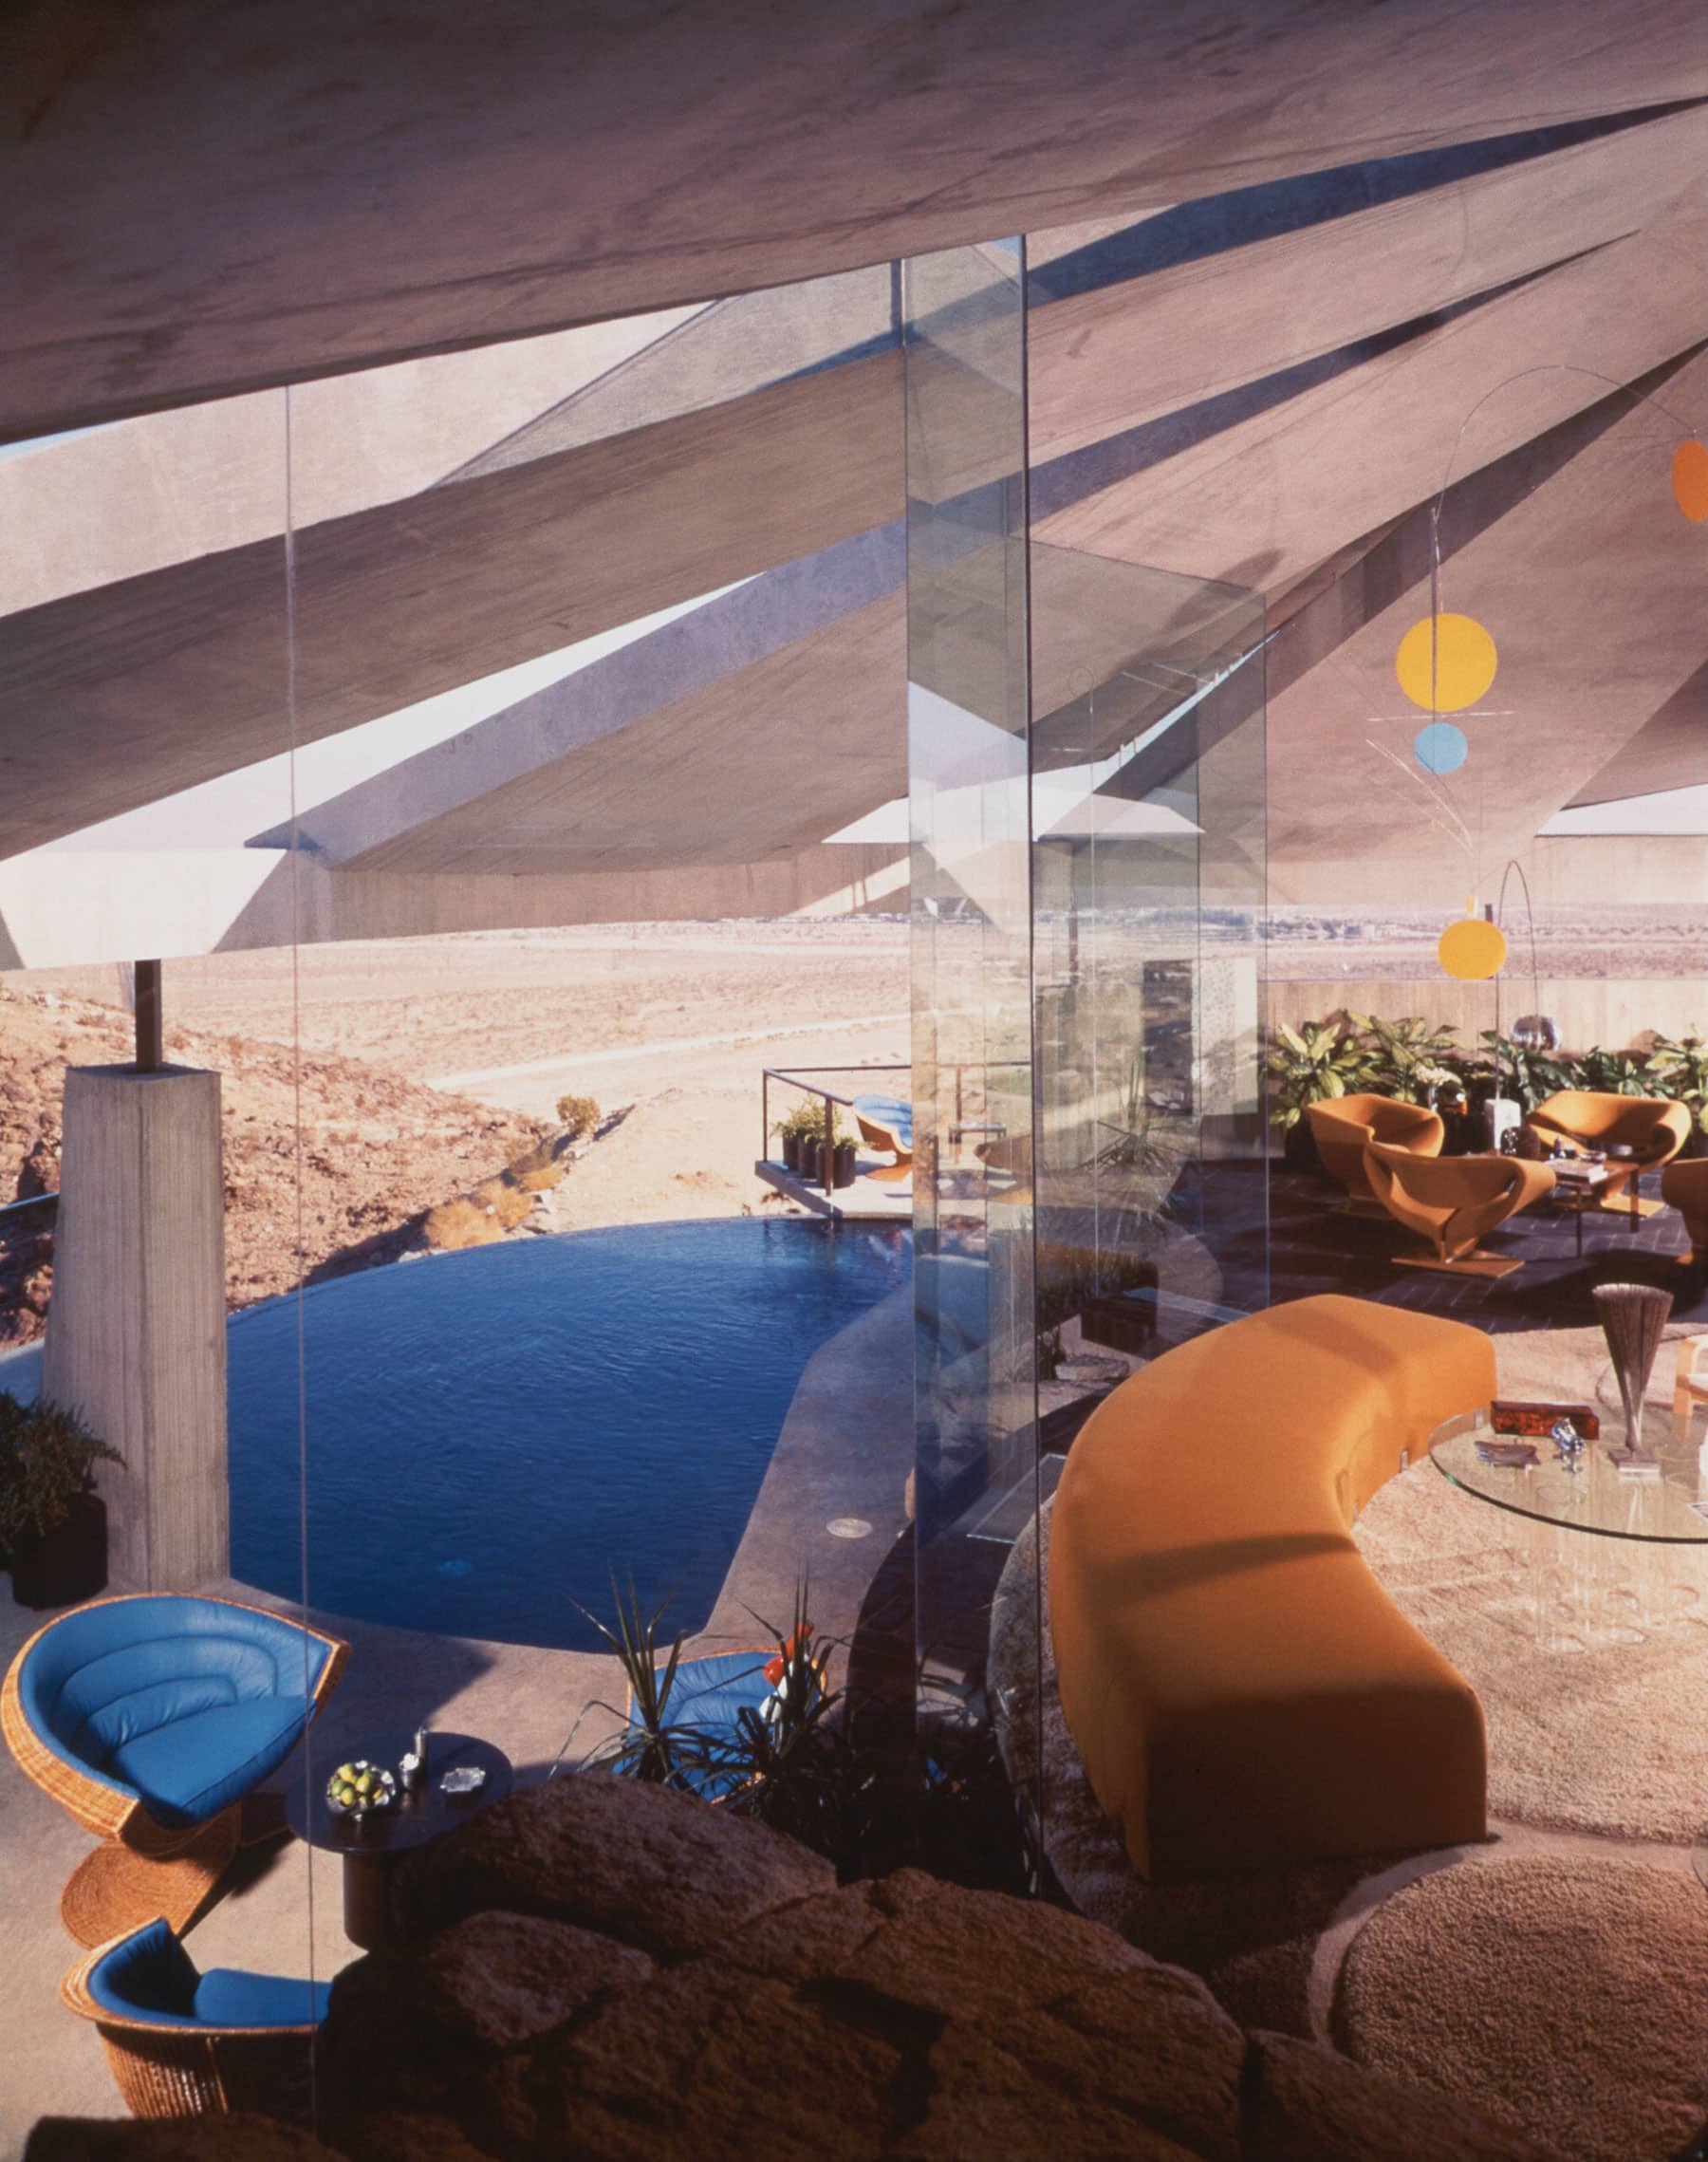 Desert Modern Designer Arthur Elrod Finally Gets His Day in the Sun